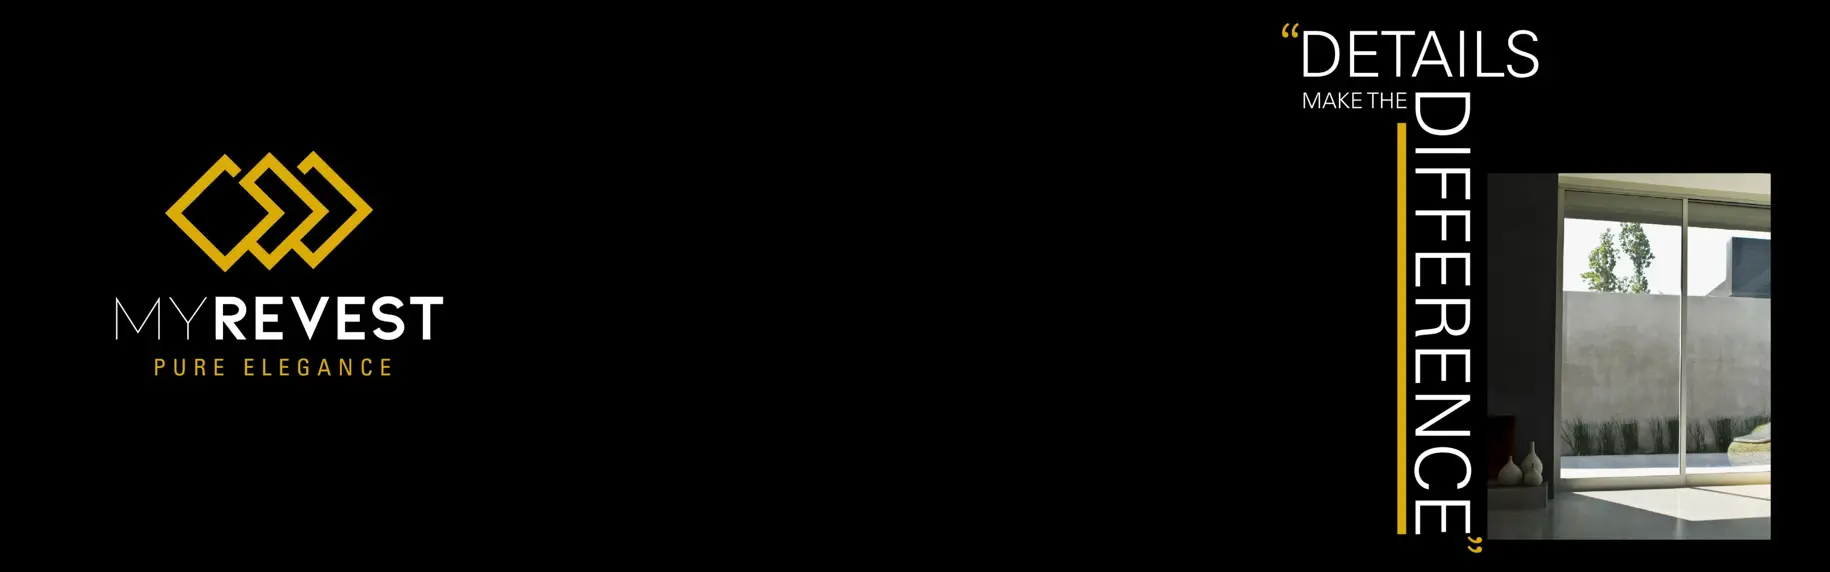 Penyelesaian lantai mikrosemen dengan aplikasi lilin My Wax Plus dan logo MyRevest di sebelah kiri